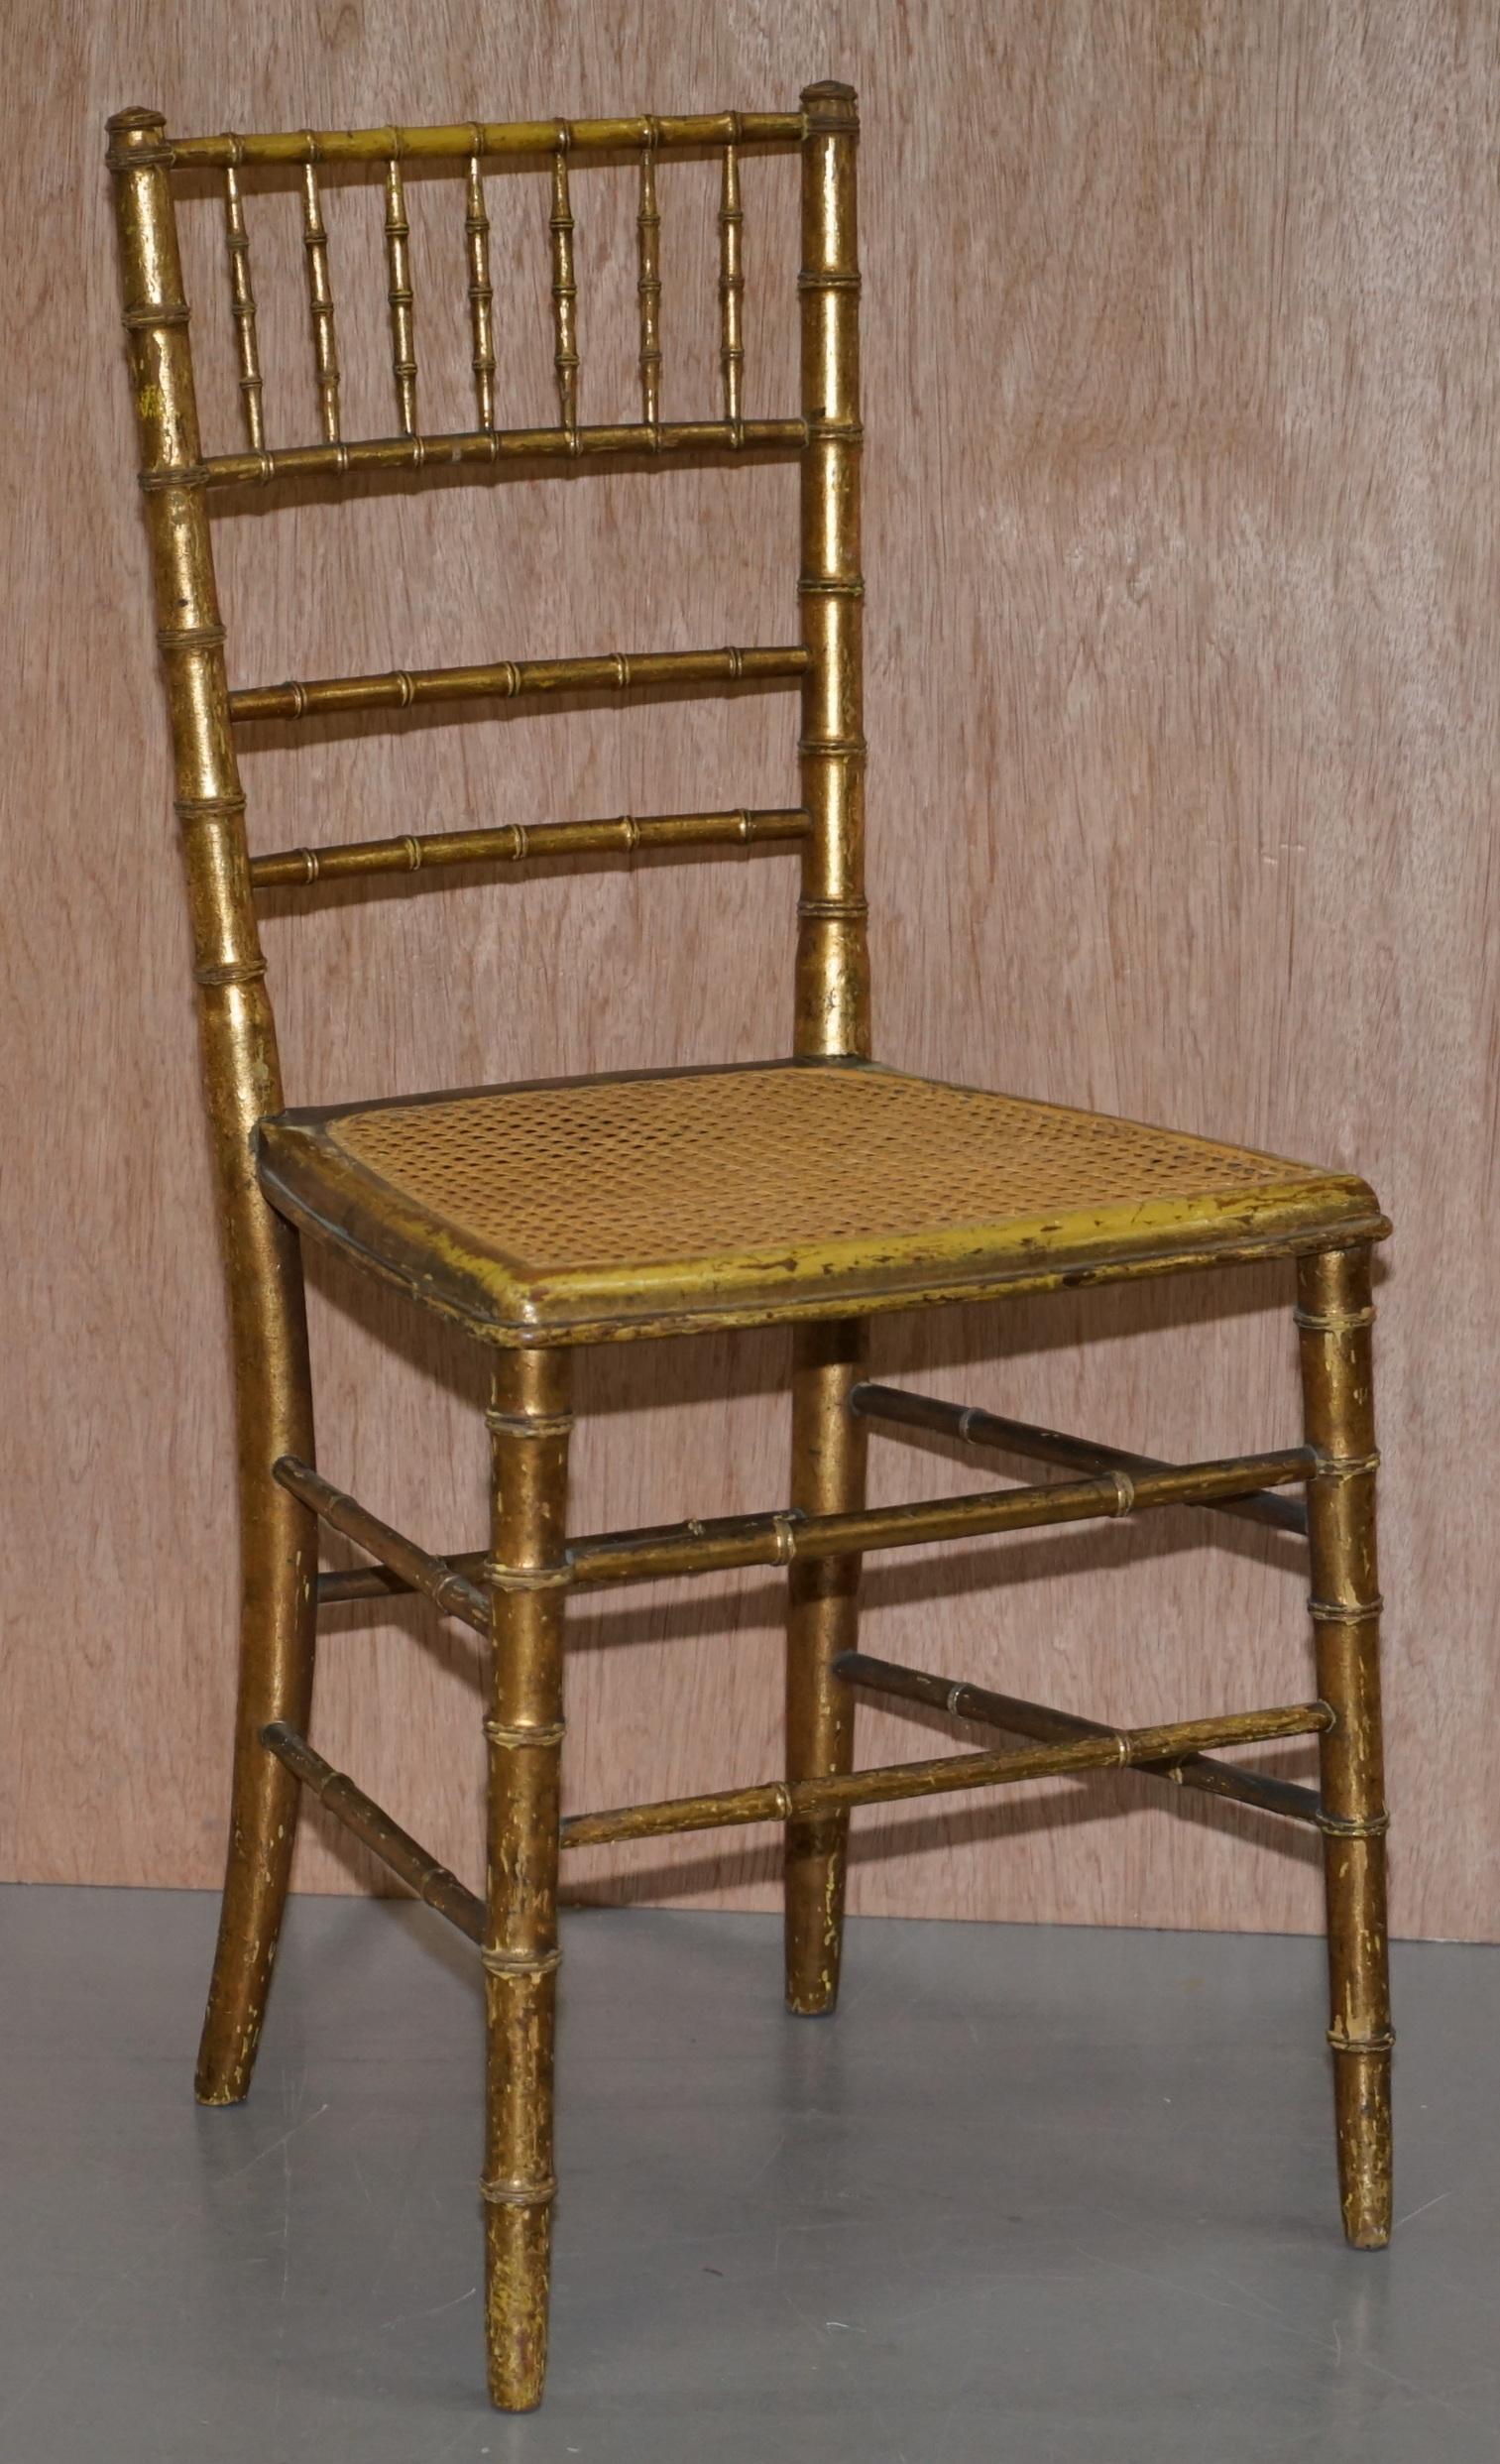 Wir freuen uns, dieses schöne Paar originaler Regency-Stühle aus vergoldetem Holz von ca. 1810 zum Verkauf anbieten zu können

Ein sehr gut aussehendes und sammelwürdiges Paar Beistellstühle. Die Rahmen sind aus Famboo, was soviel bedeutet wie